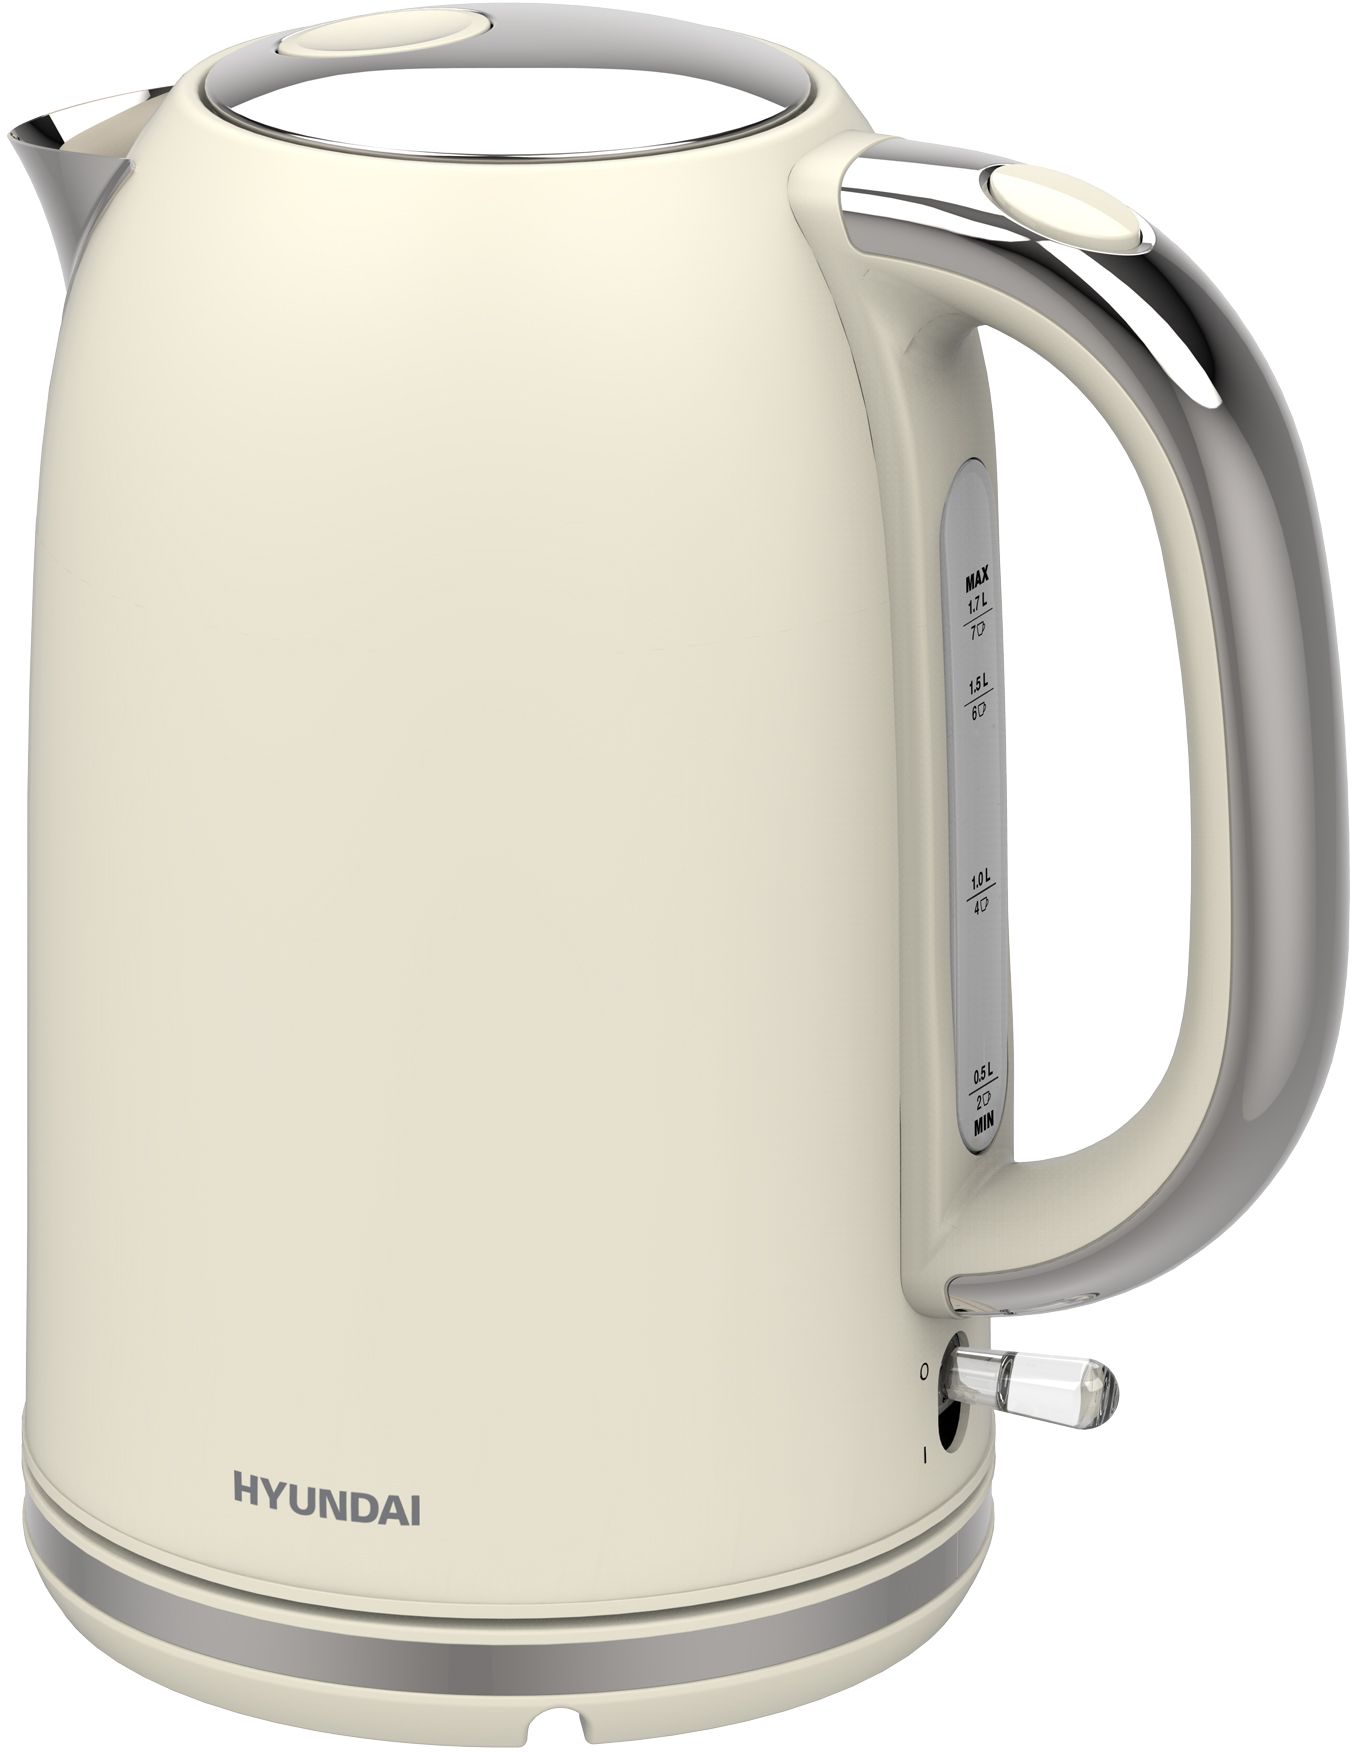 Чайник электрический HYUNDAI HYK-S9900 1.7 л бежевый чайник электрический morphy richards accent kettle mr7076a ml молочный